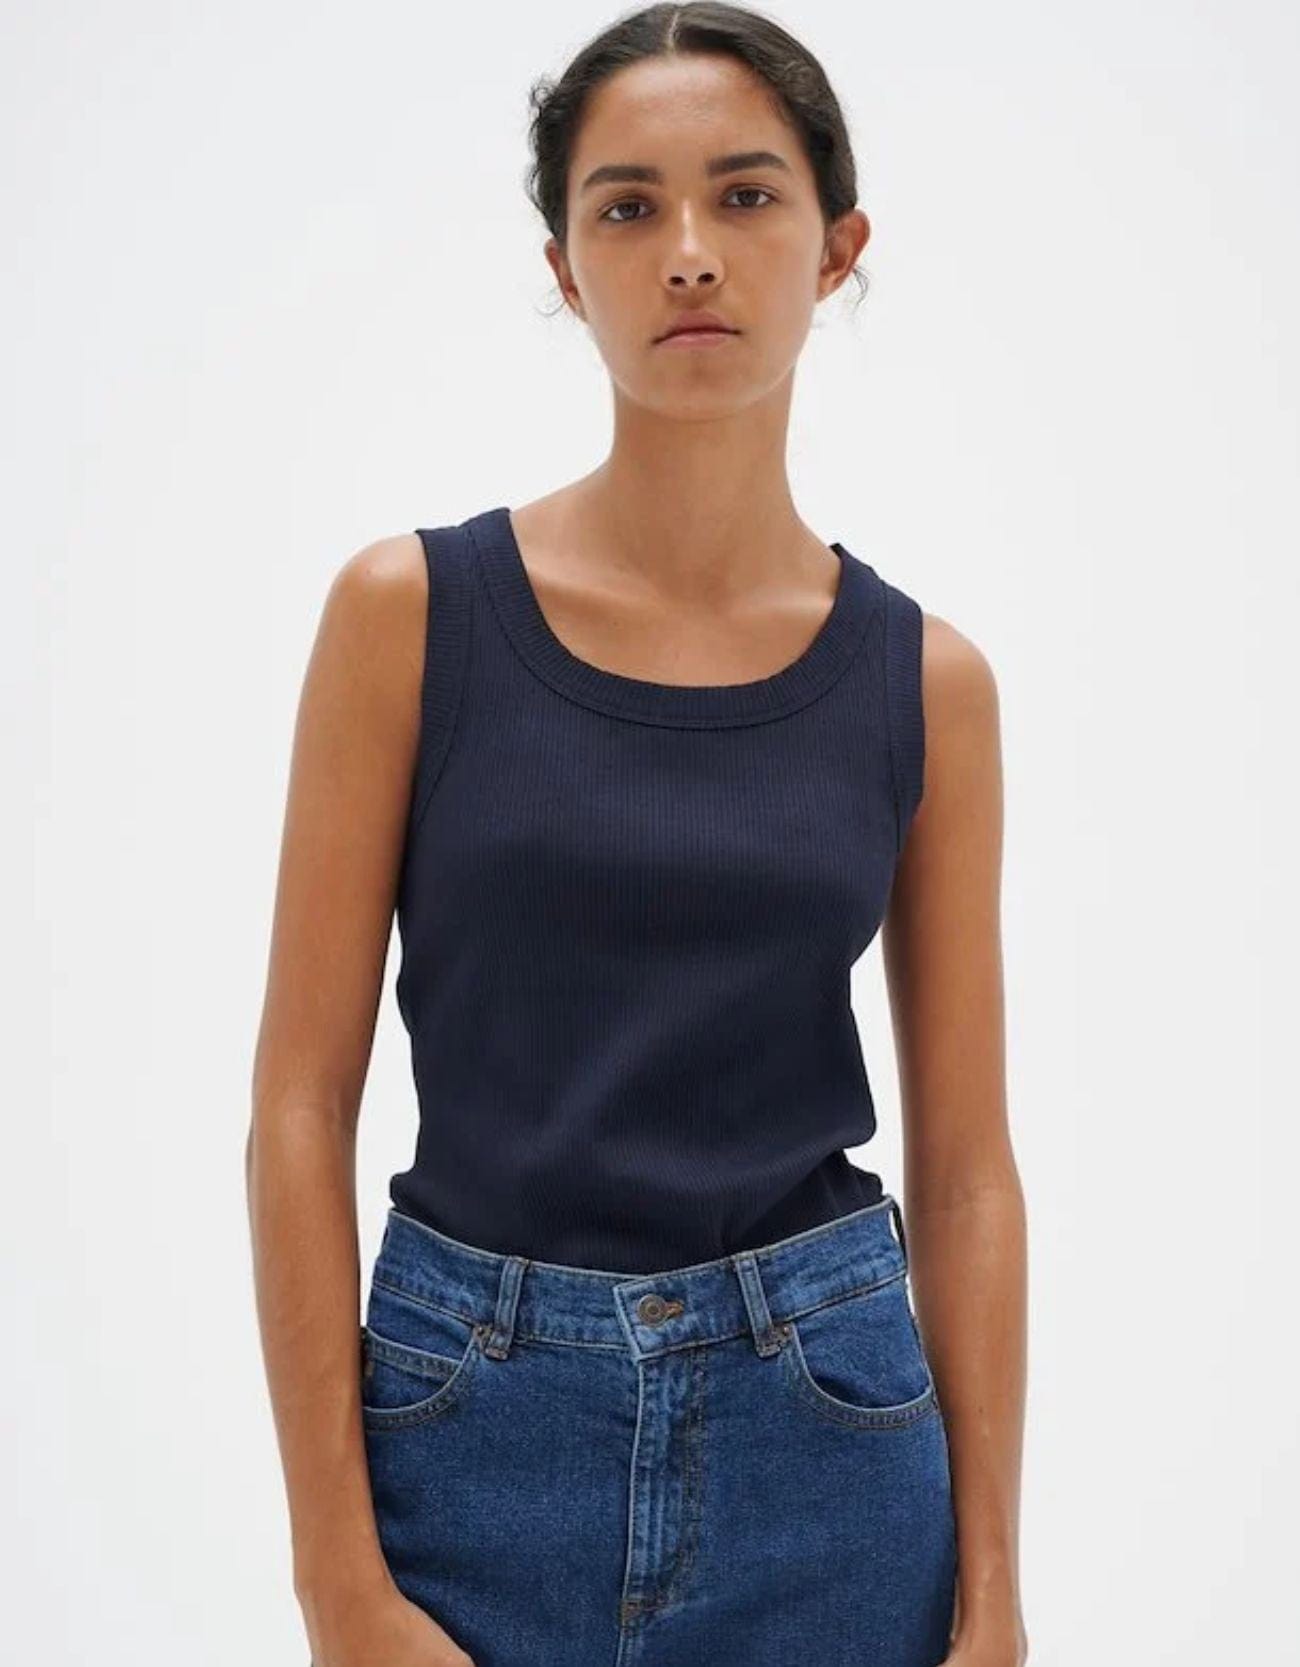 Zeng Xiaoxian Thin Long-sleeved T-shirt Sunscreen Shirt Casual Suit Women's  Summer Style Wear